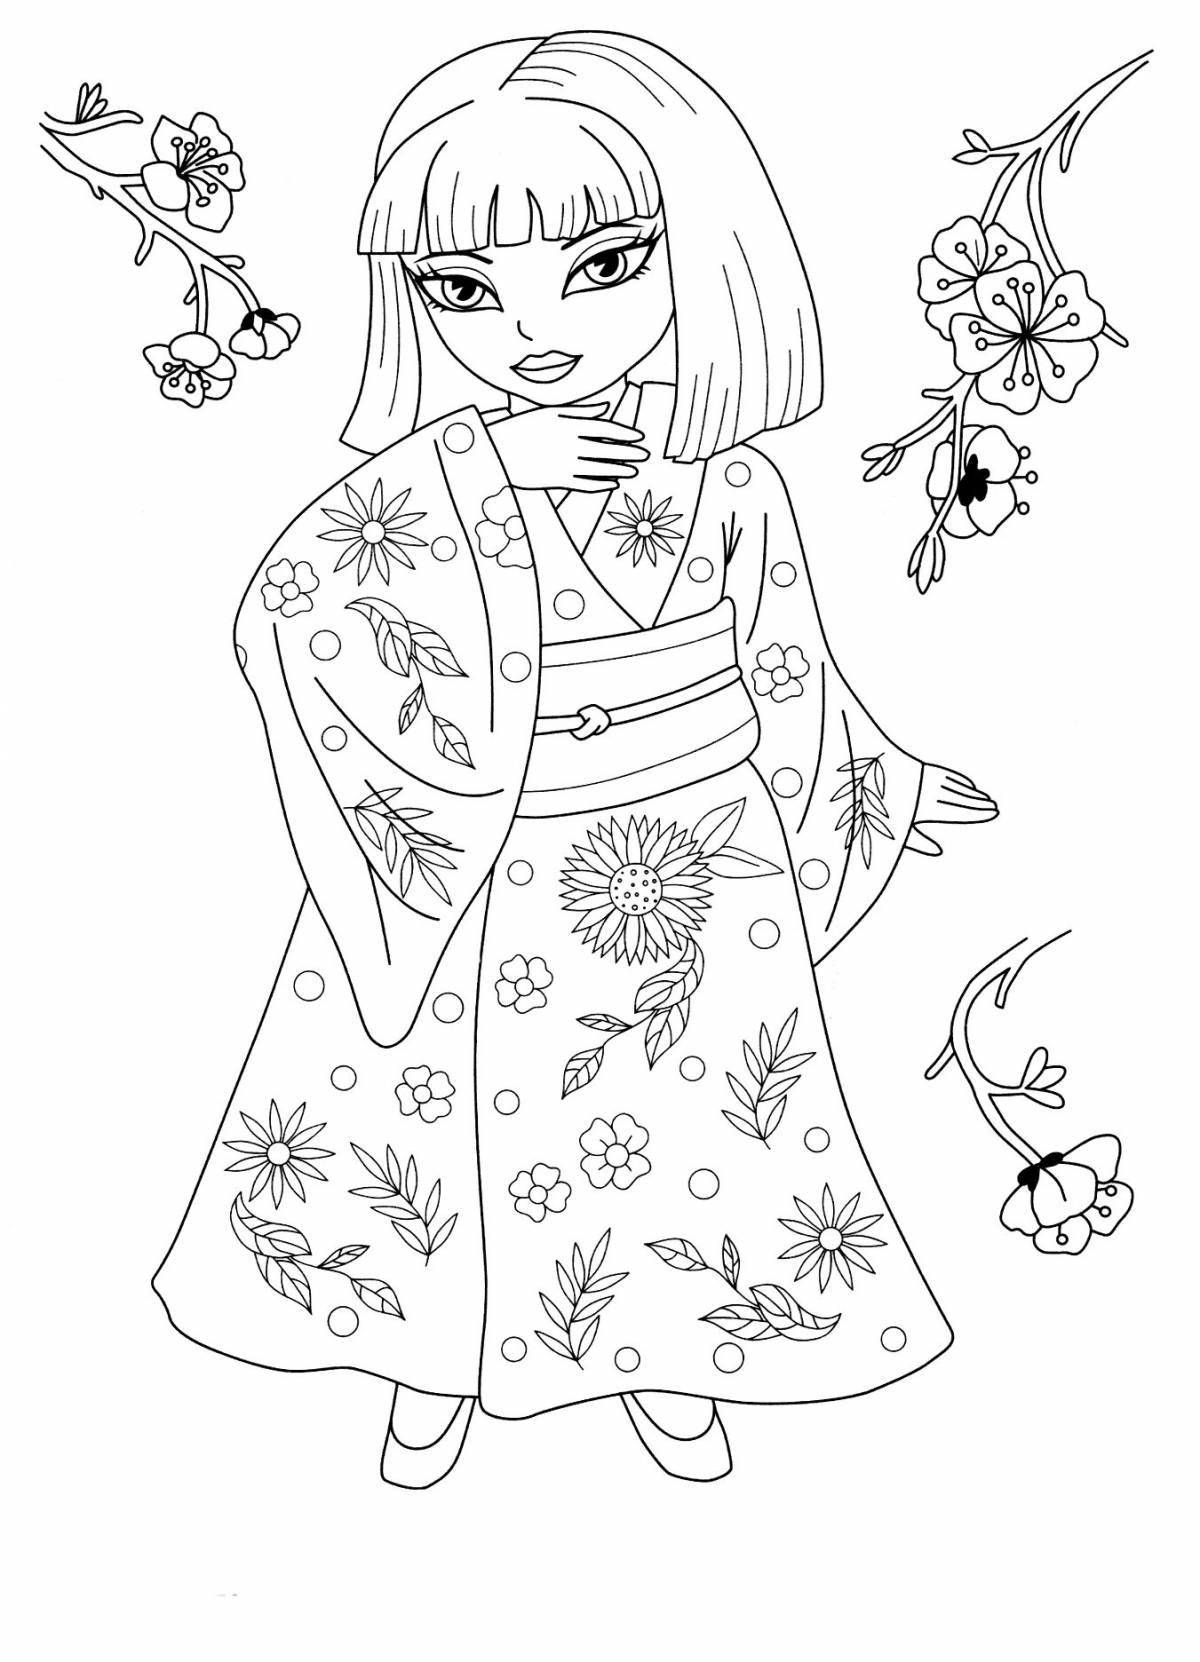 Playful kimono coloring page for kids